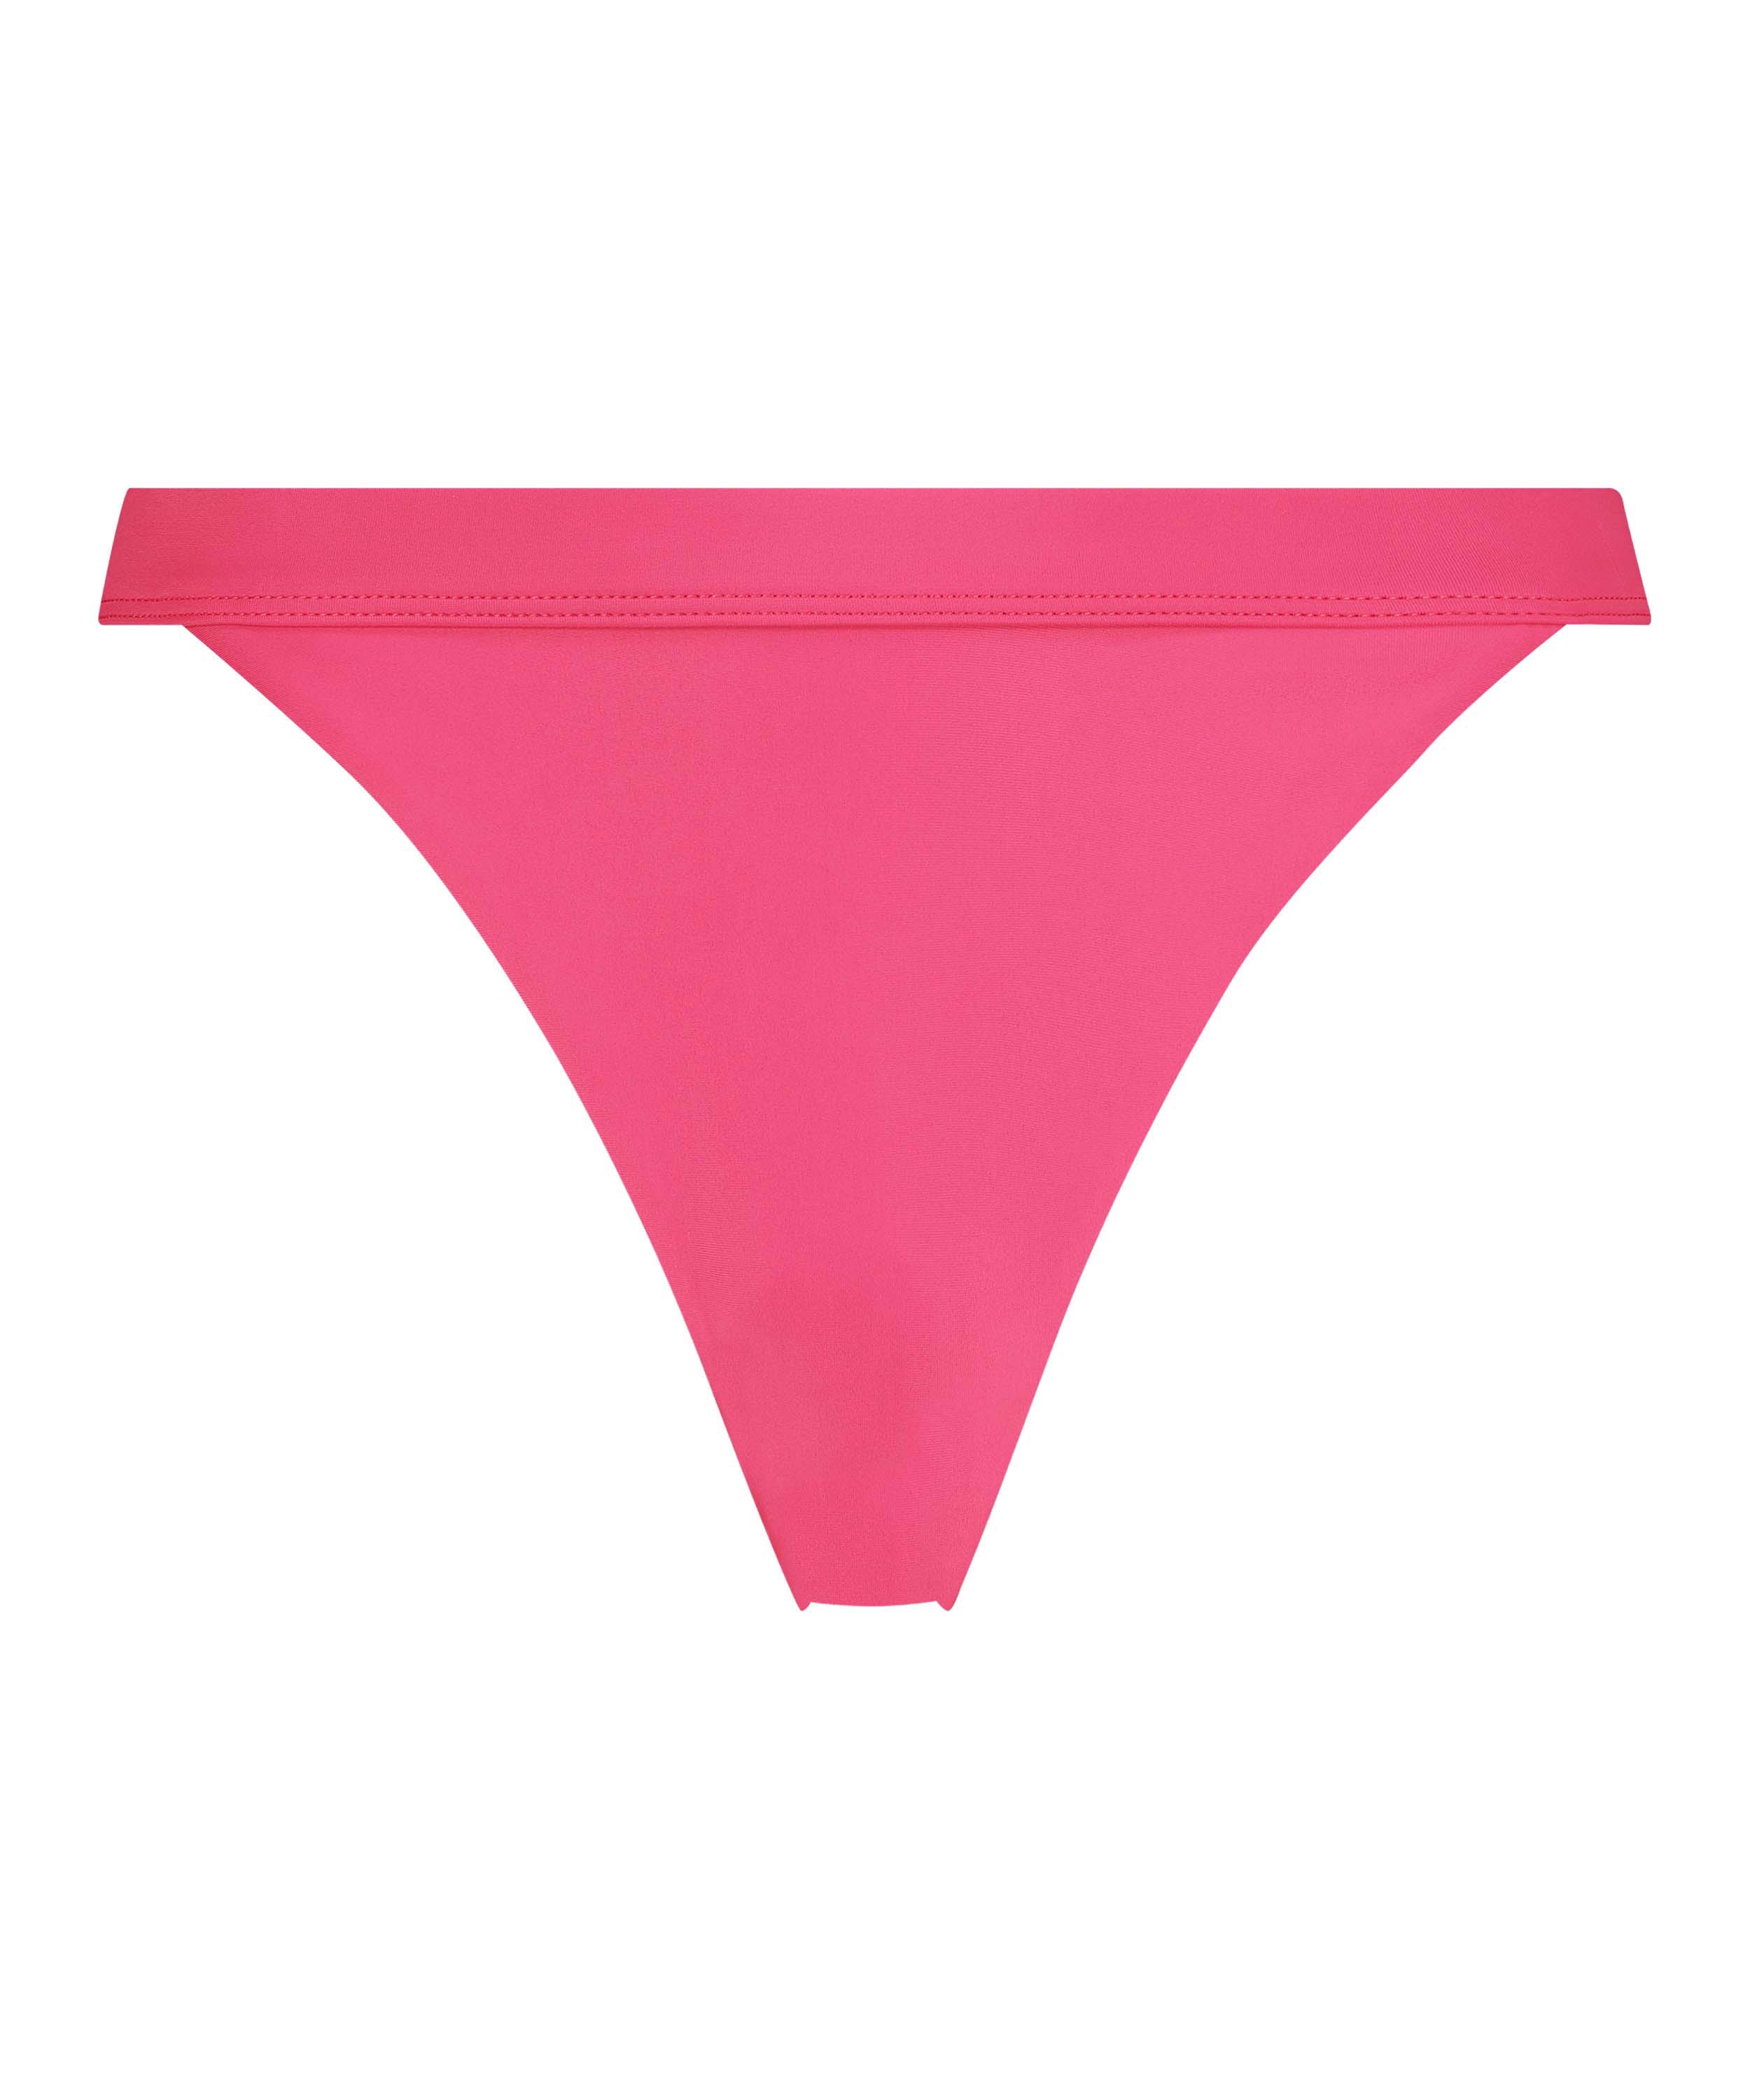 Ibiza Bikini Bottoms, Pink, main